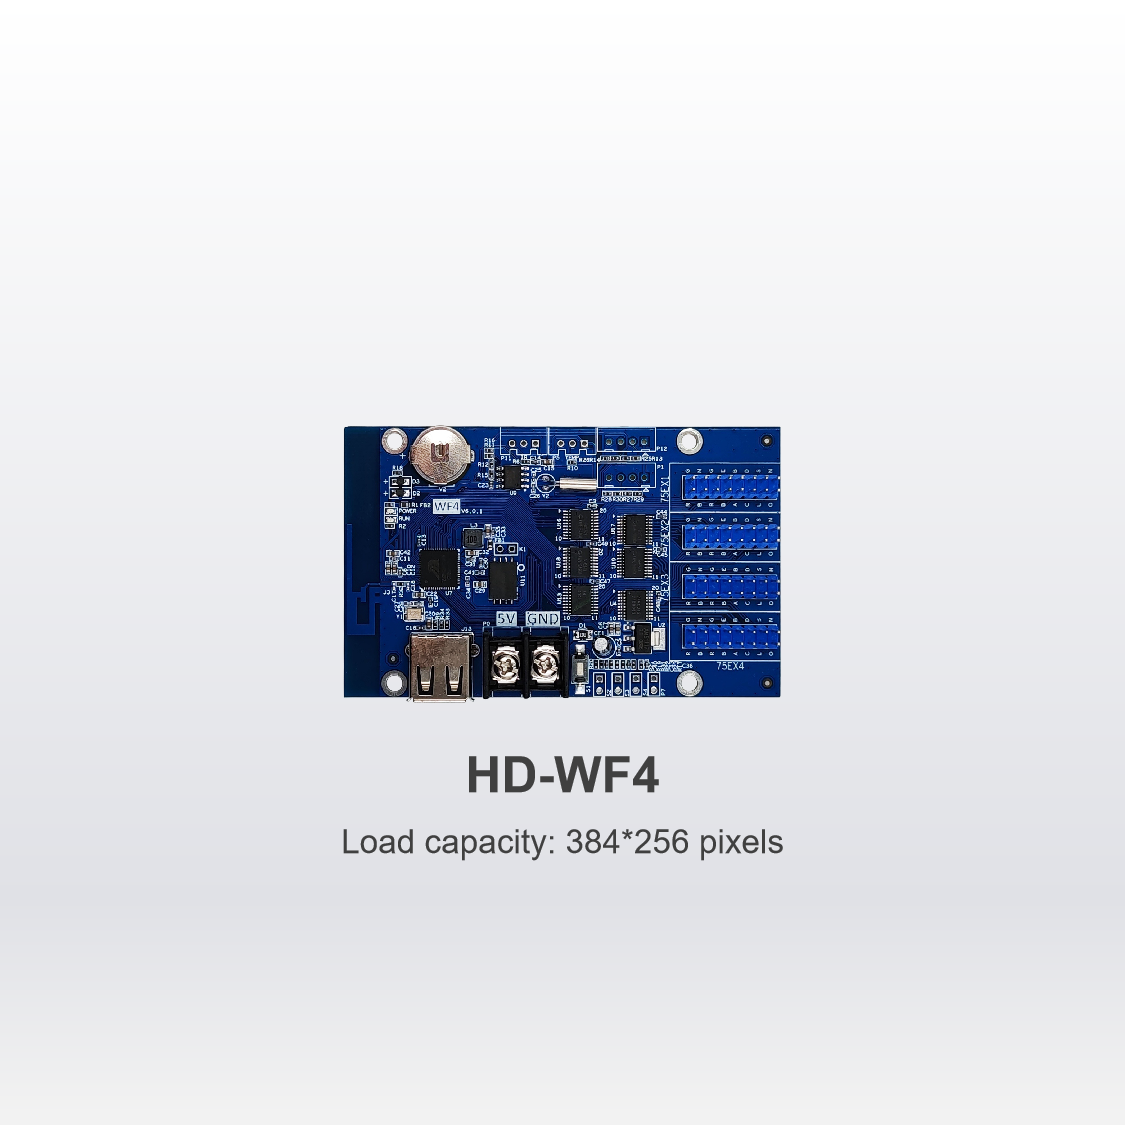 New HUB75 Series Control Card HD-WF4